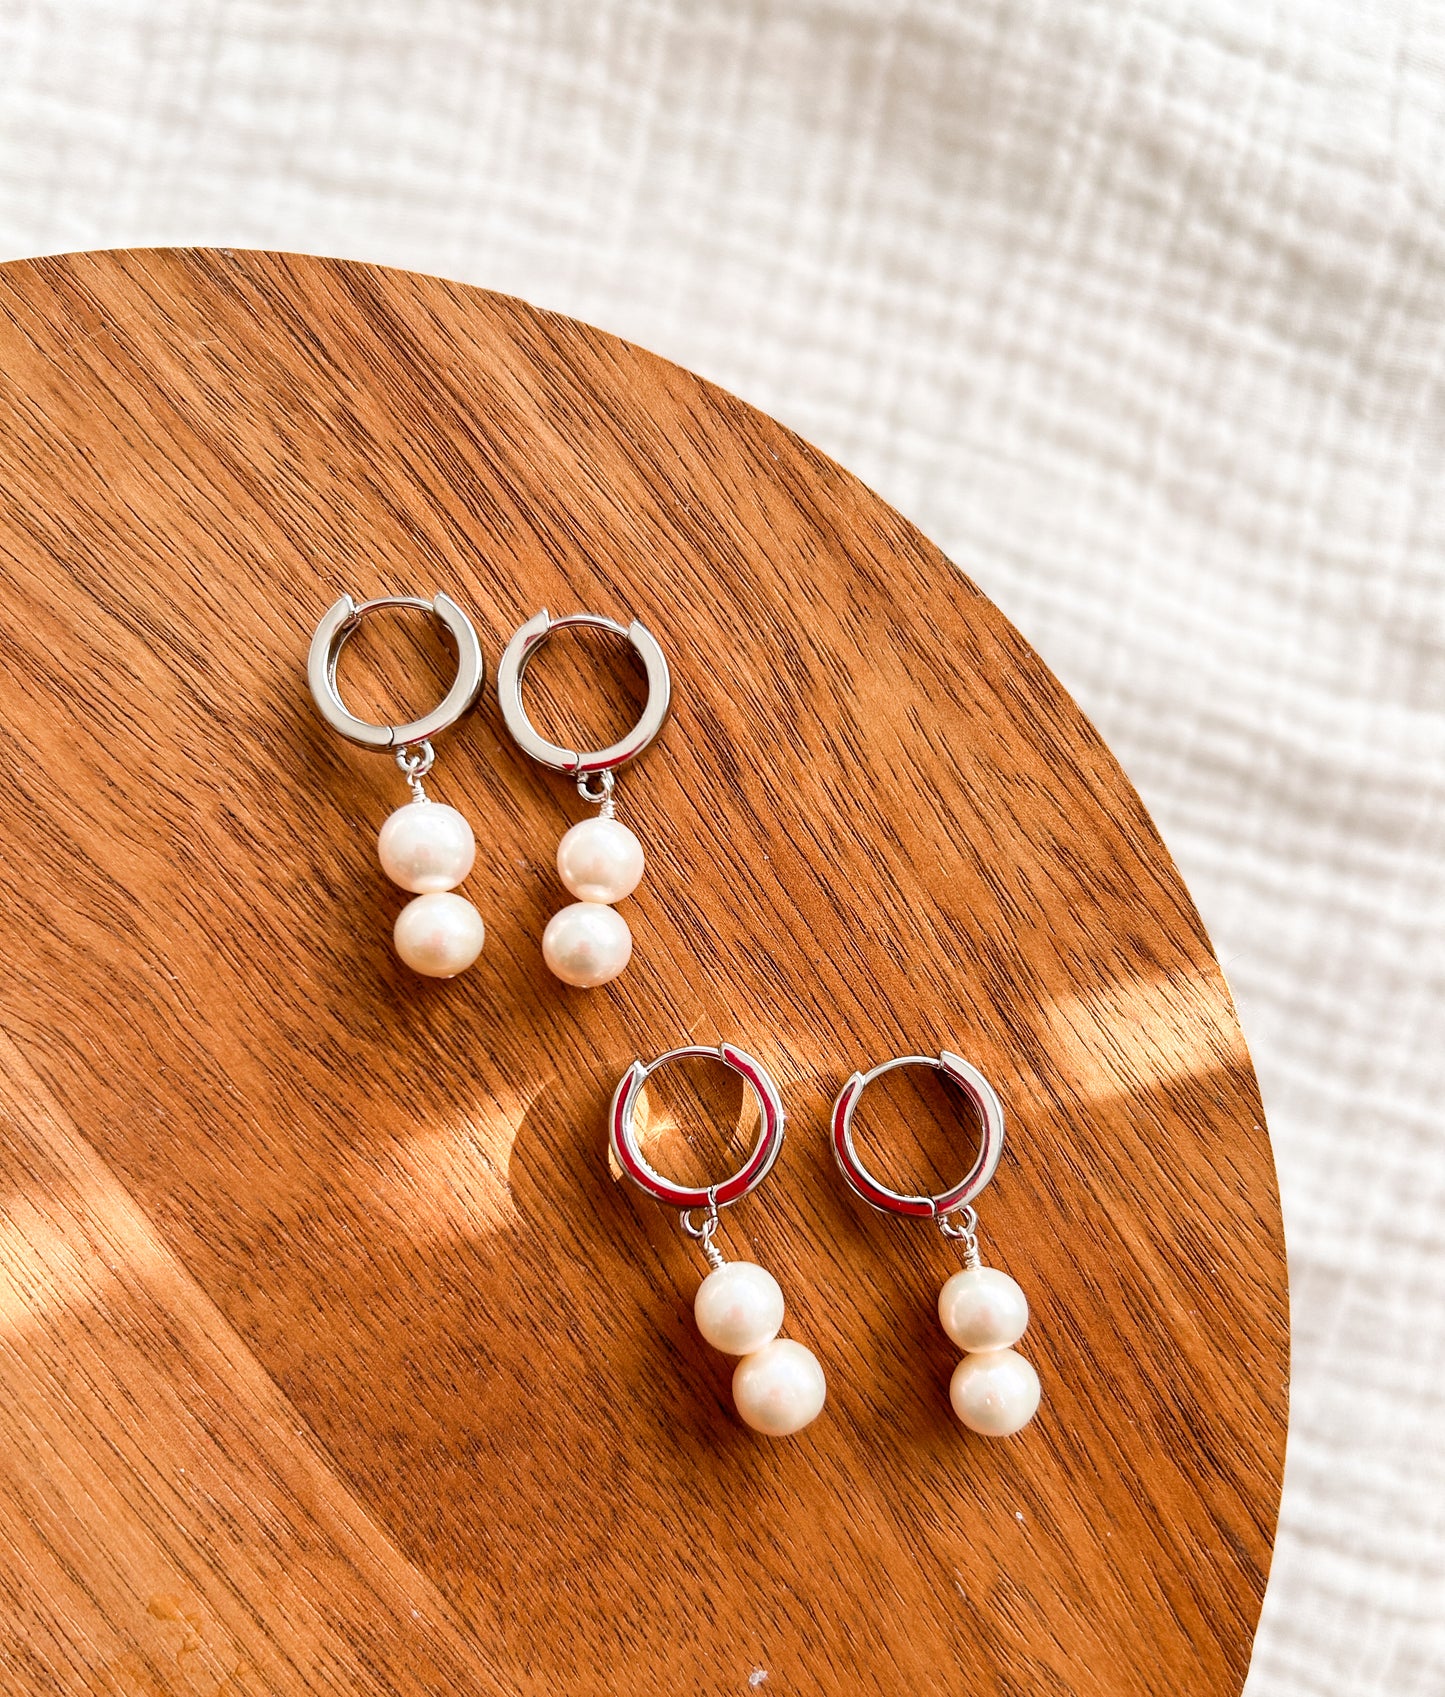 Silver Pearl Huggie Earrings | Dainty Earrings | Wedding | Bridal Earrings | platinum plated silver| Hypoallergenic | Pearl Earring | Romantic | Bride